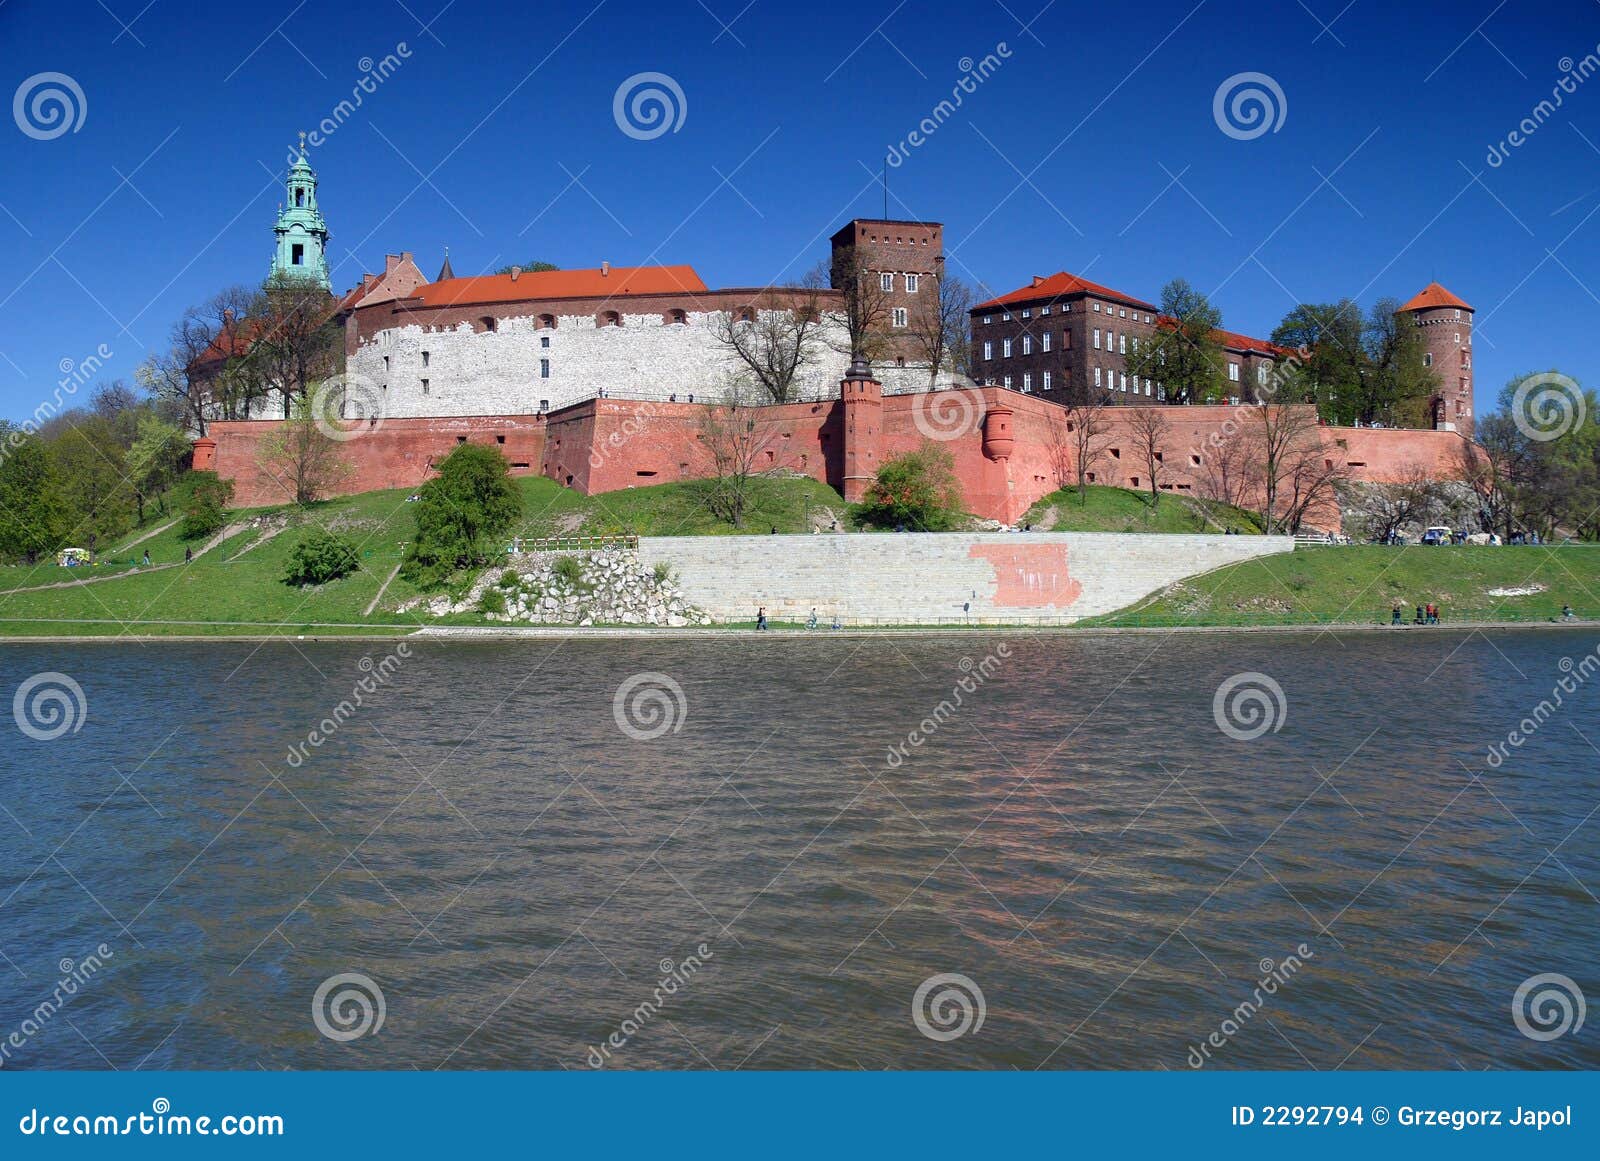 wawel - royal castle in krakow